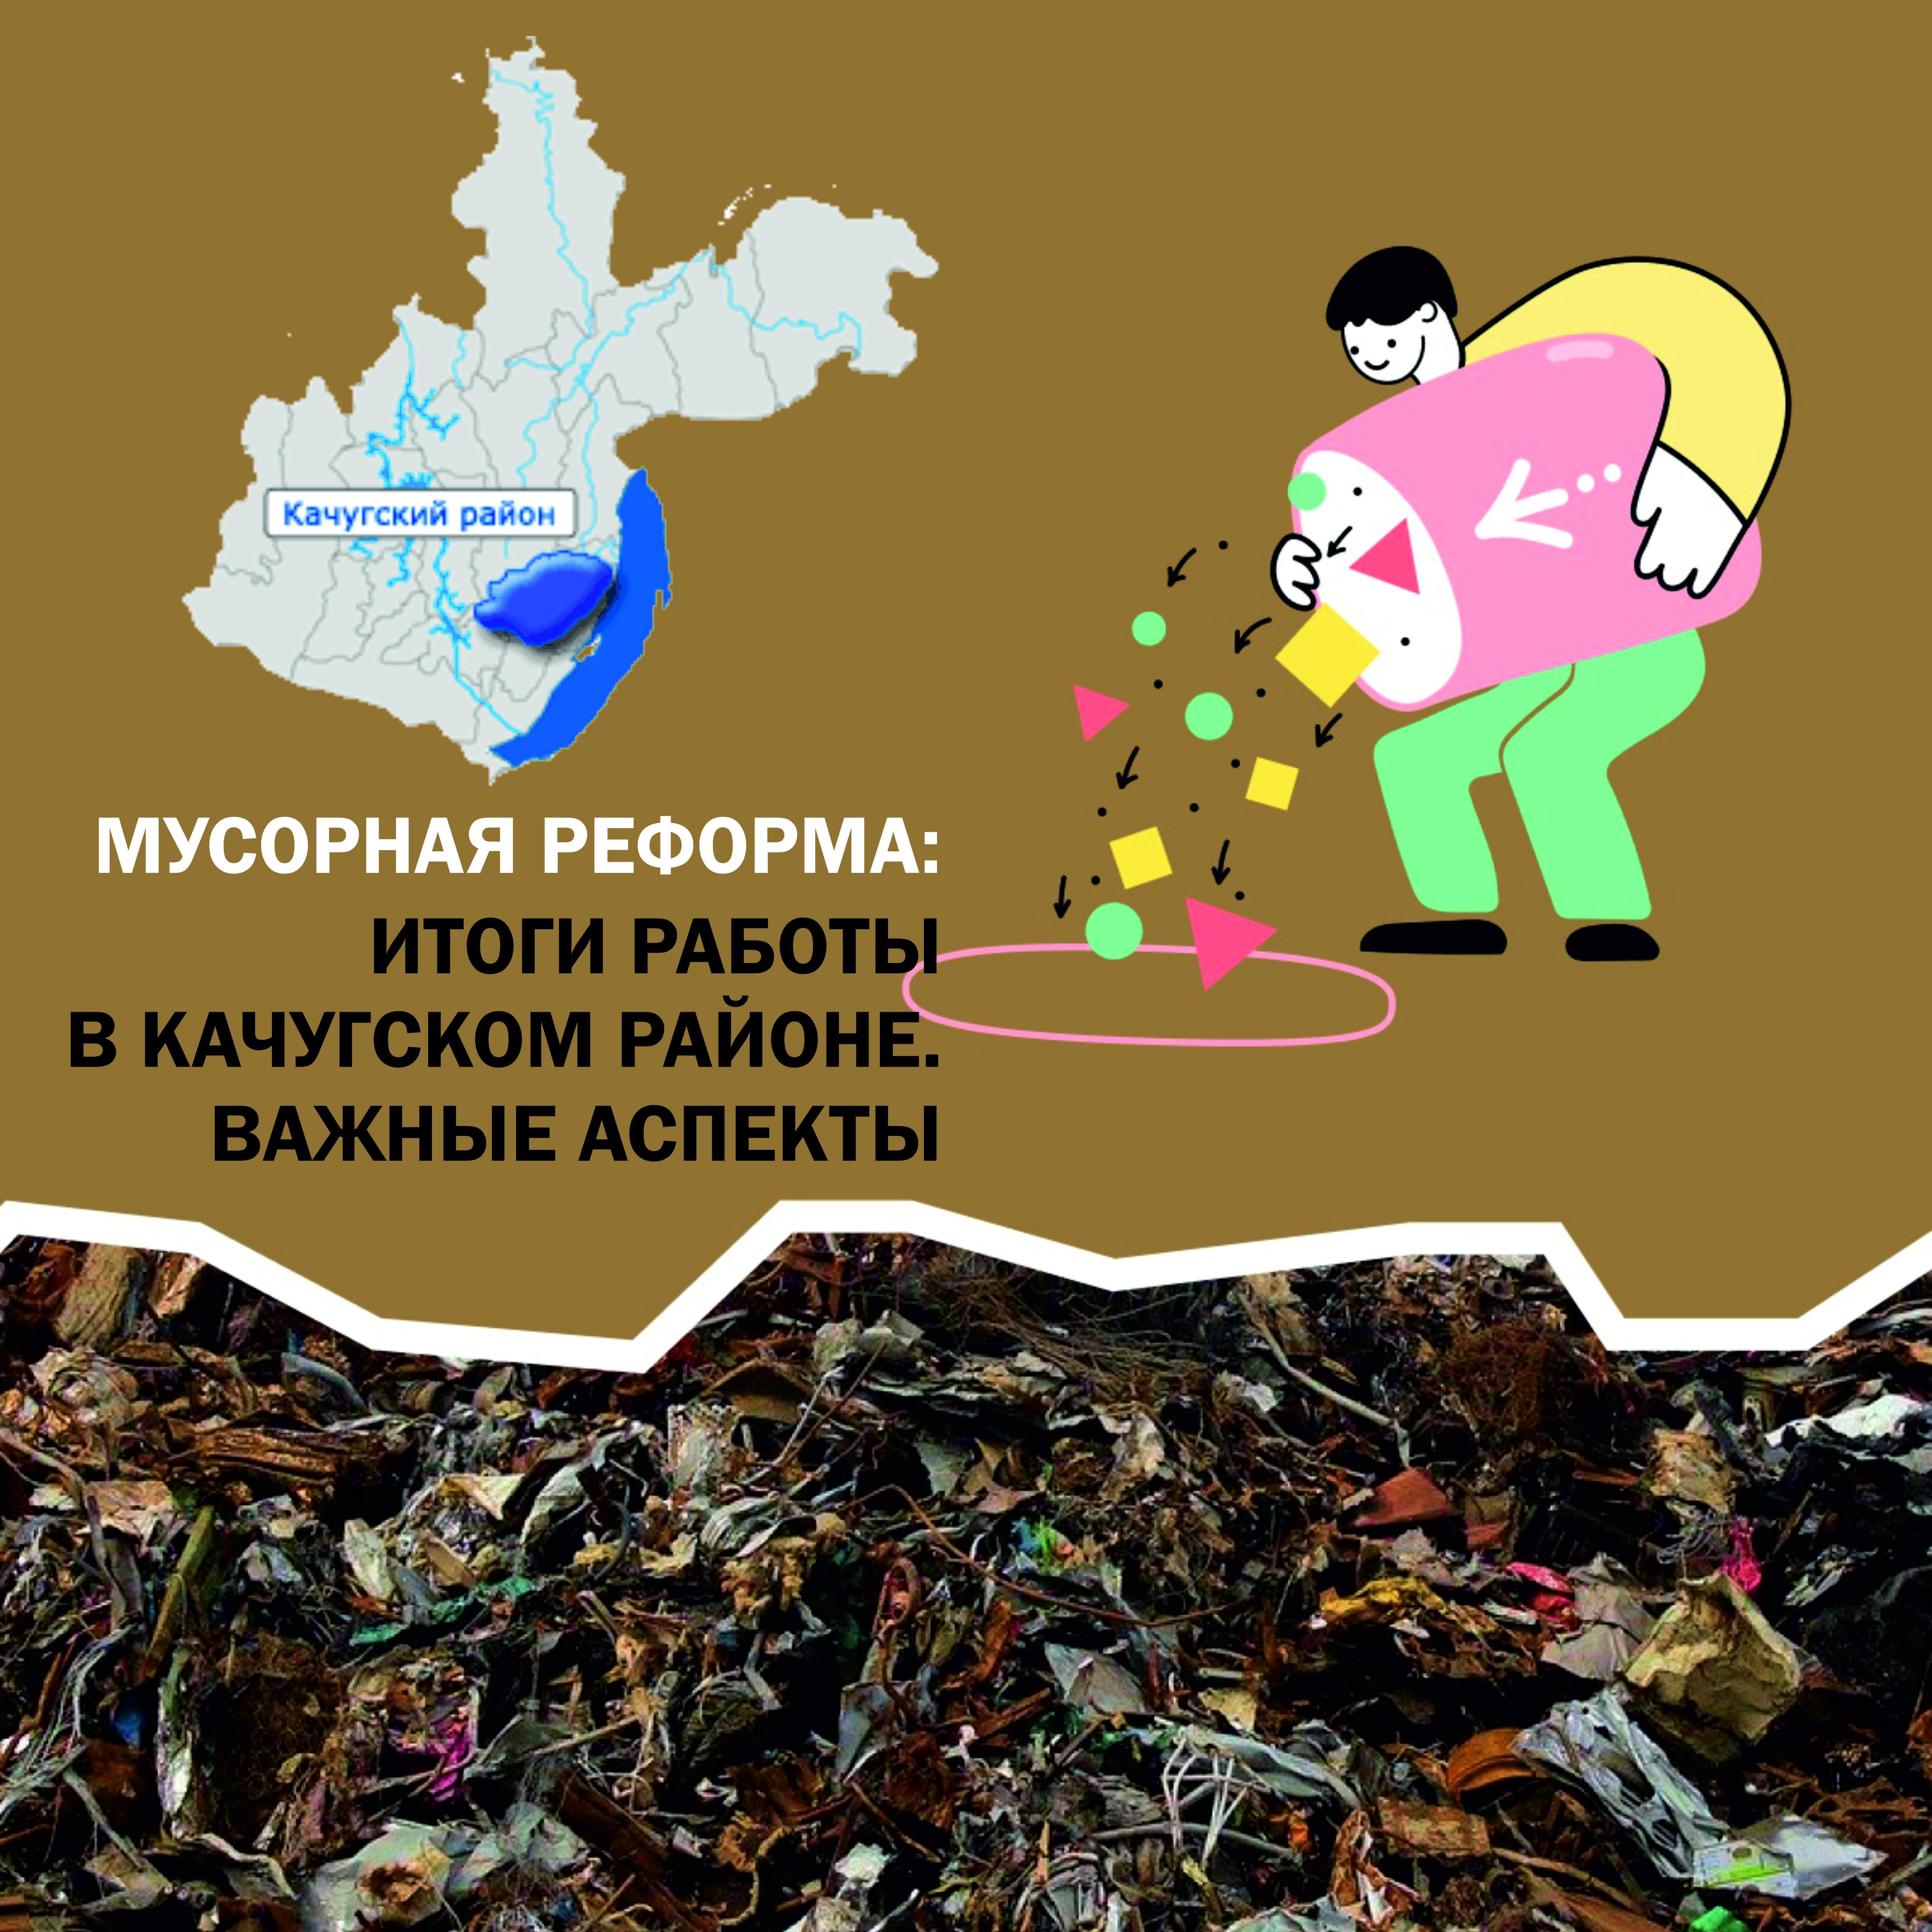 Итоги работы мусорной реформы в Качугском районе. Важные аспекты